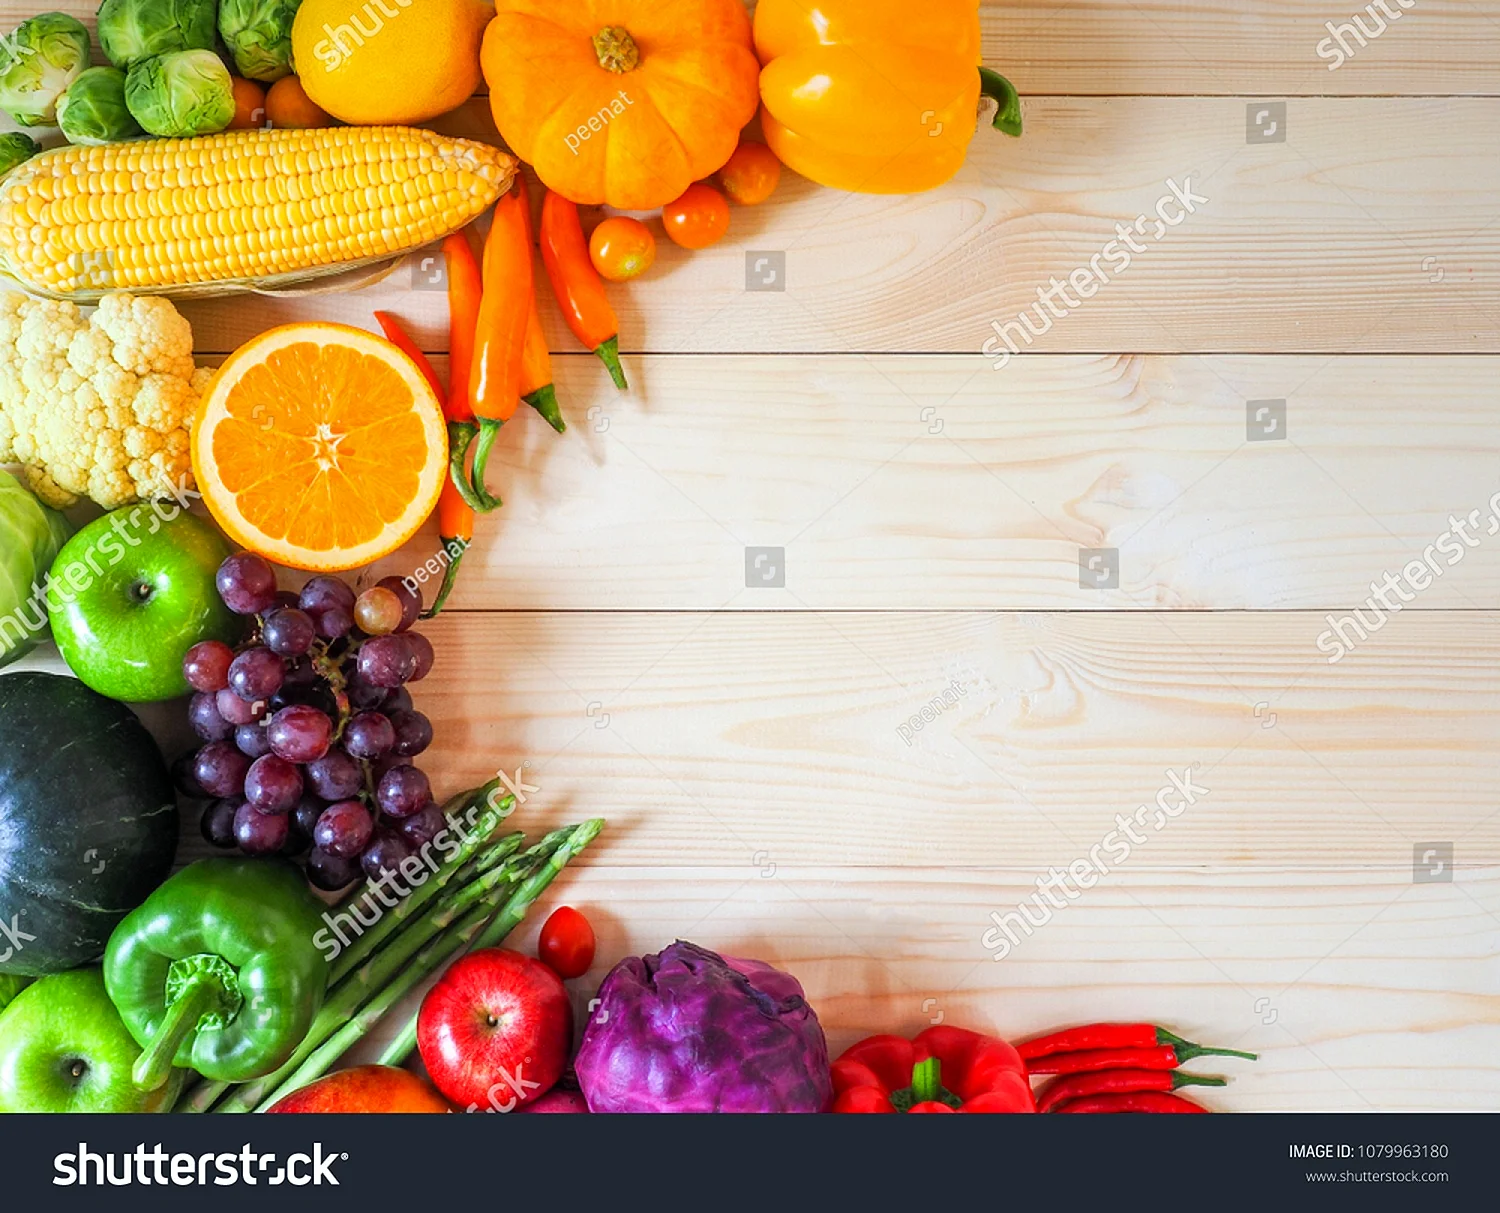 Рамка из свежих фруктов и овощей